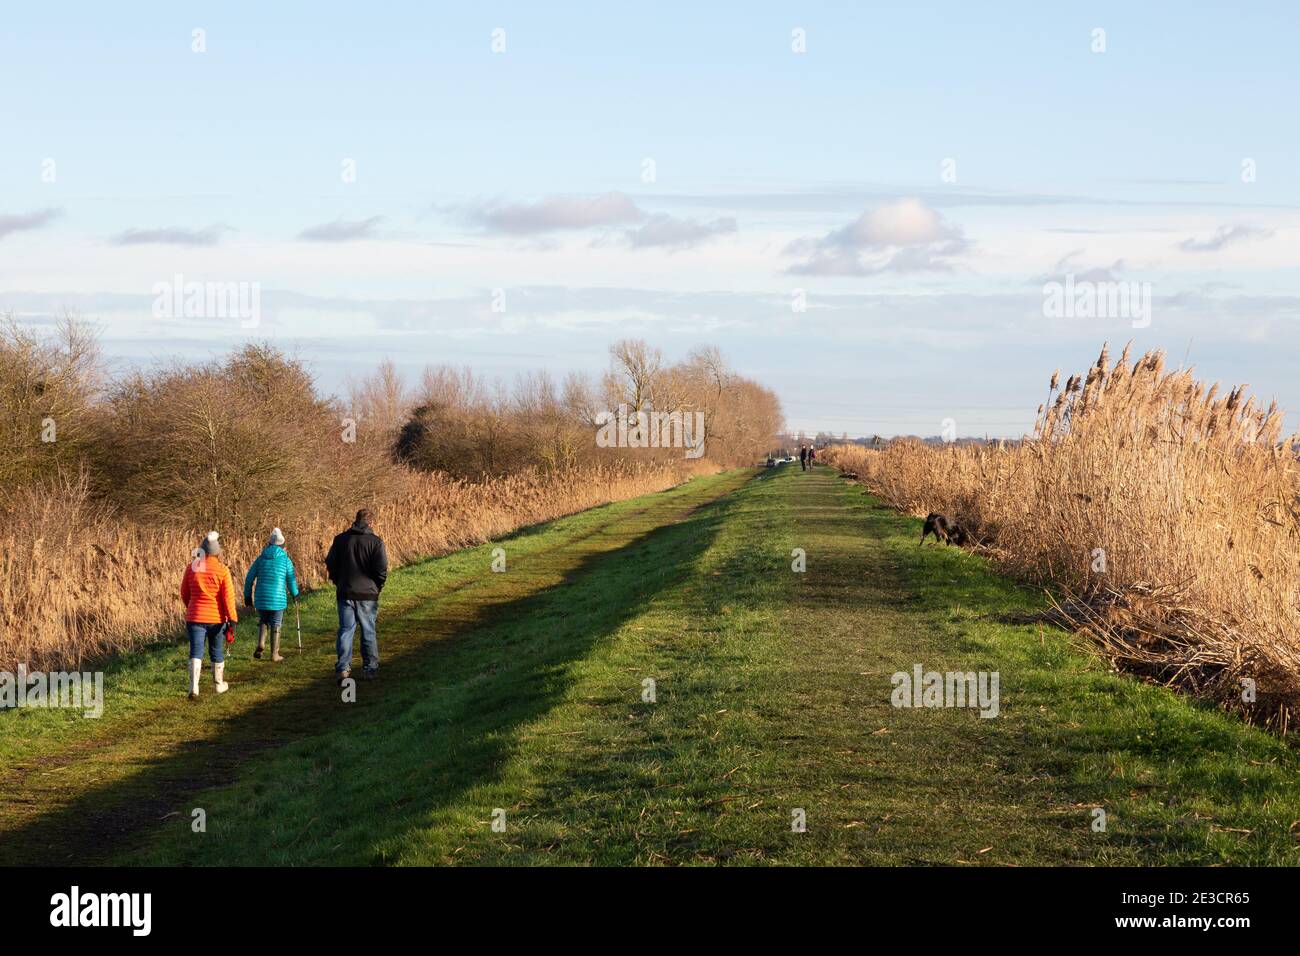 UK Lifestyle; Menschen auf dem Land in Großbritannien. Wanderer im Burwell Fen, Wandern im januar Sonnenschein im Winter, Burwell, Cambridgeshire East Anglia Großbritannien Stockfoto